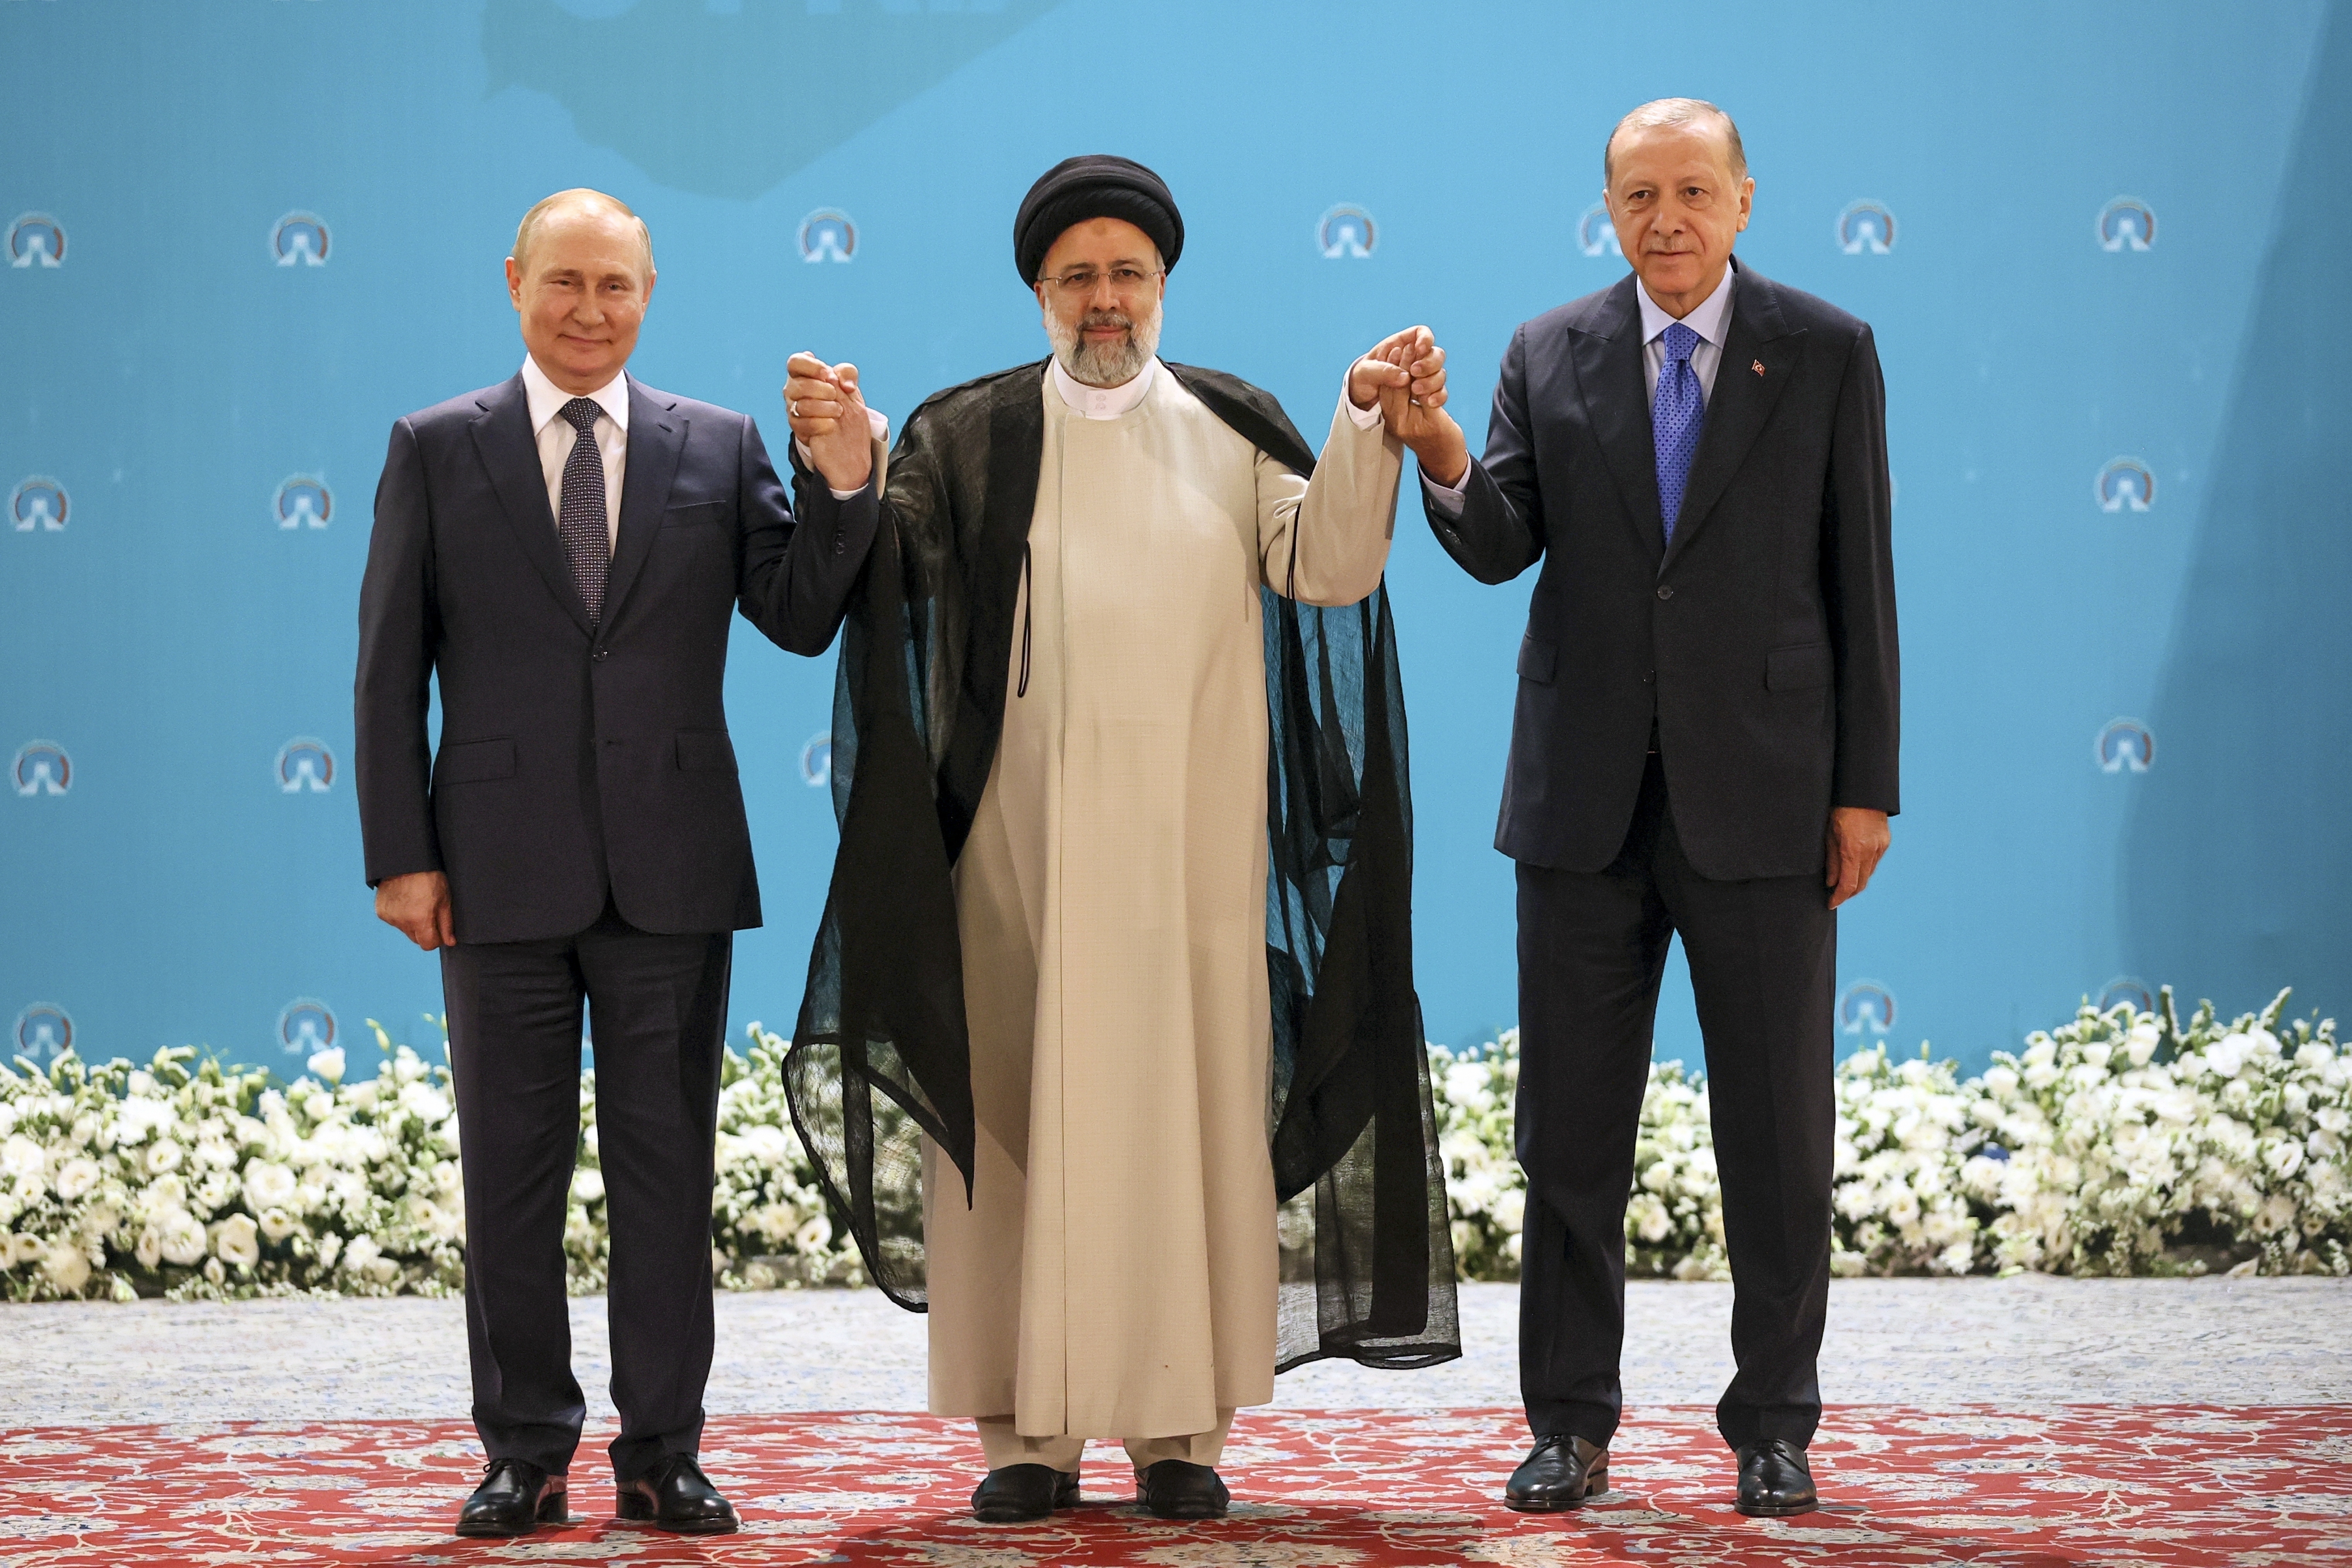 El presidente ruso Vladimir Putin, a la izquierda, el mandatario iraní Ebrahim Raisi, al centro, y su homólogo turco Recep Tayyip Erdogan, posan para una fotografía antes de su reunión, el martes 19 de julio de 2022 en Teherán, Irán. (Sergei Savostyanov, Sputnik, Kremlin Pool Foto via AP)